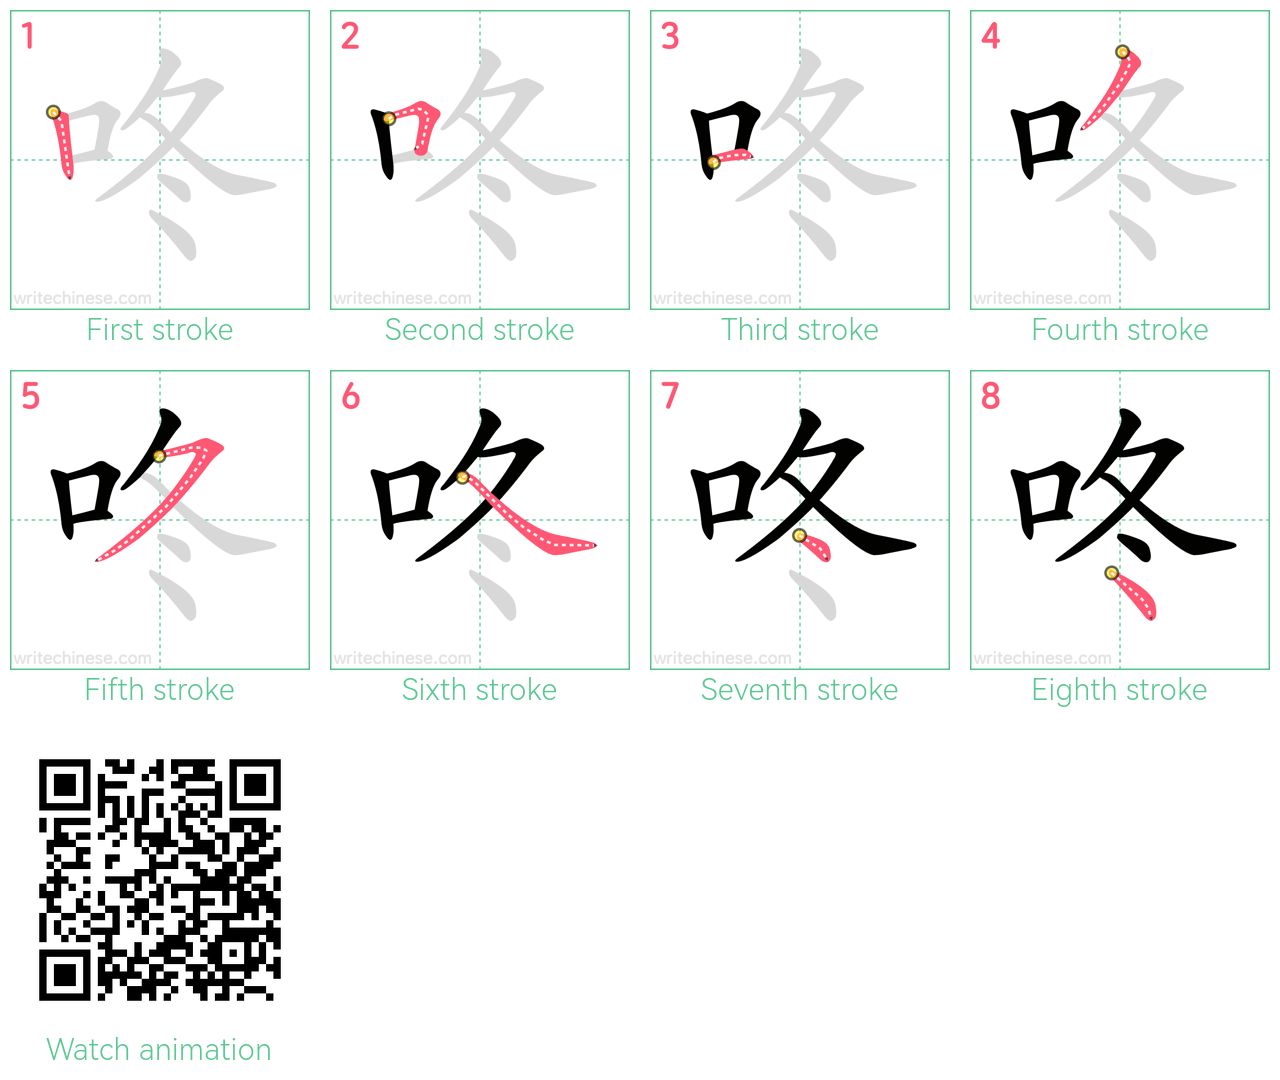 咚 step-by-step stroke order diagrams